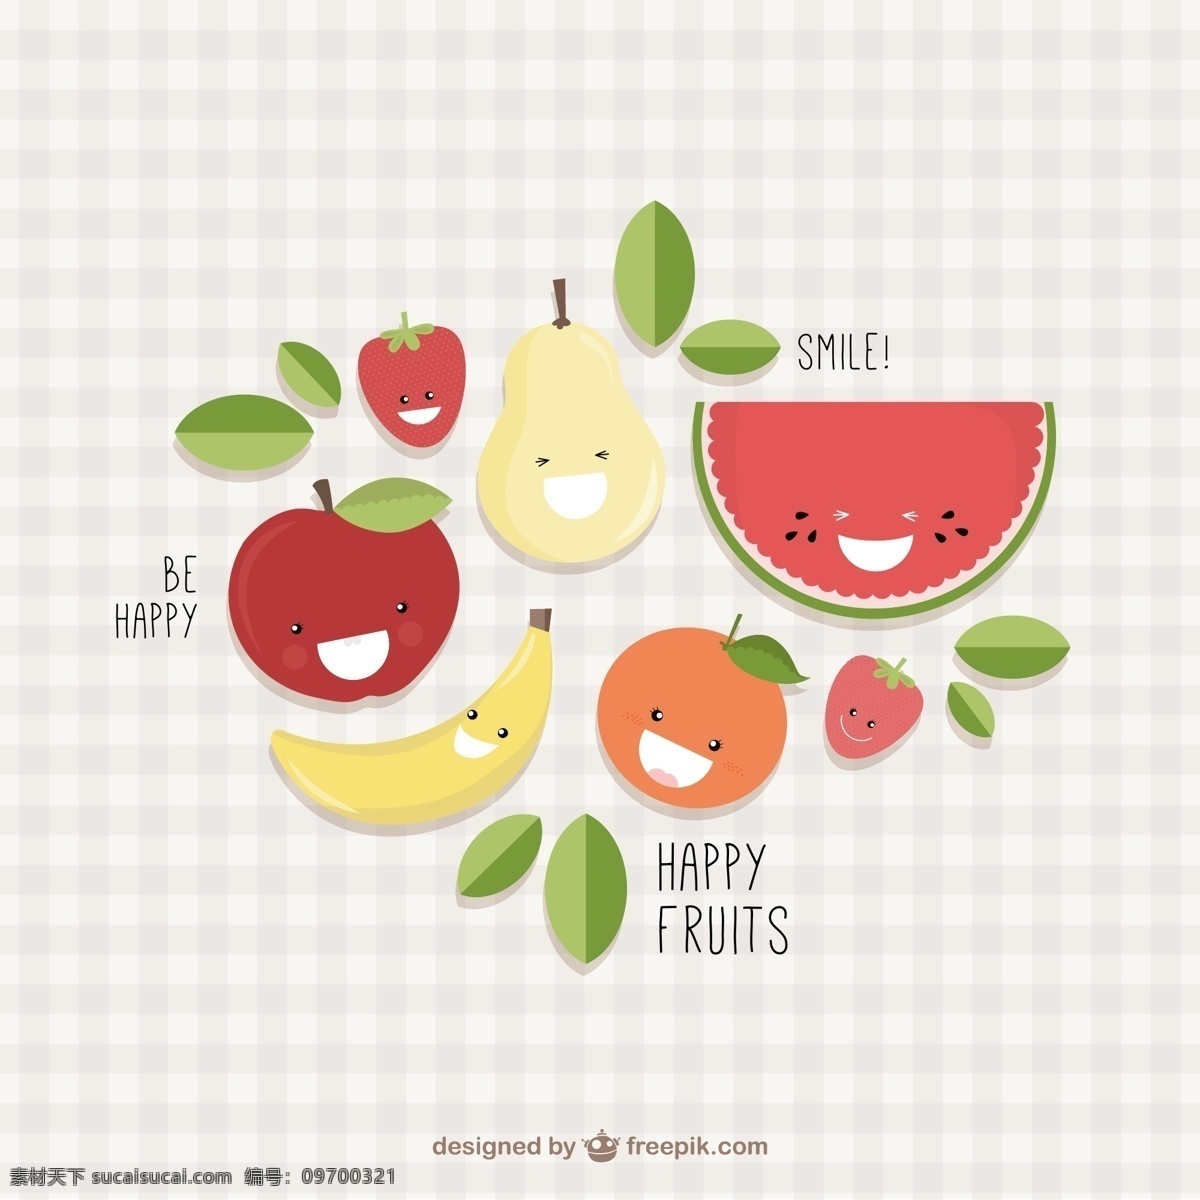 开心水果 可爱水果 卡通水果 西瓜 雪梨 苹果 橙 草莓 橙子 橘子 桔子 香蕉 梨 绿叶 叶子 格子背景 水果 创意 创意水果 水果创意 矢量水果 矢量 创意果蔬 果蔬创意 生物世界